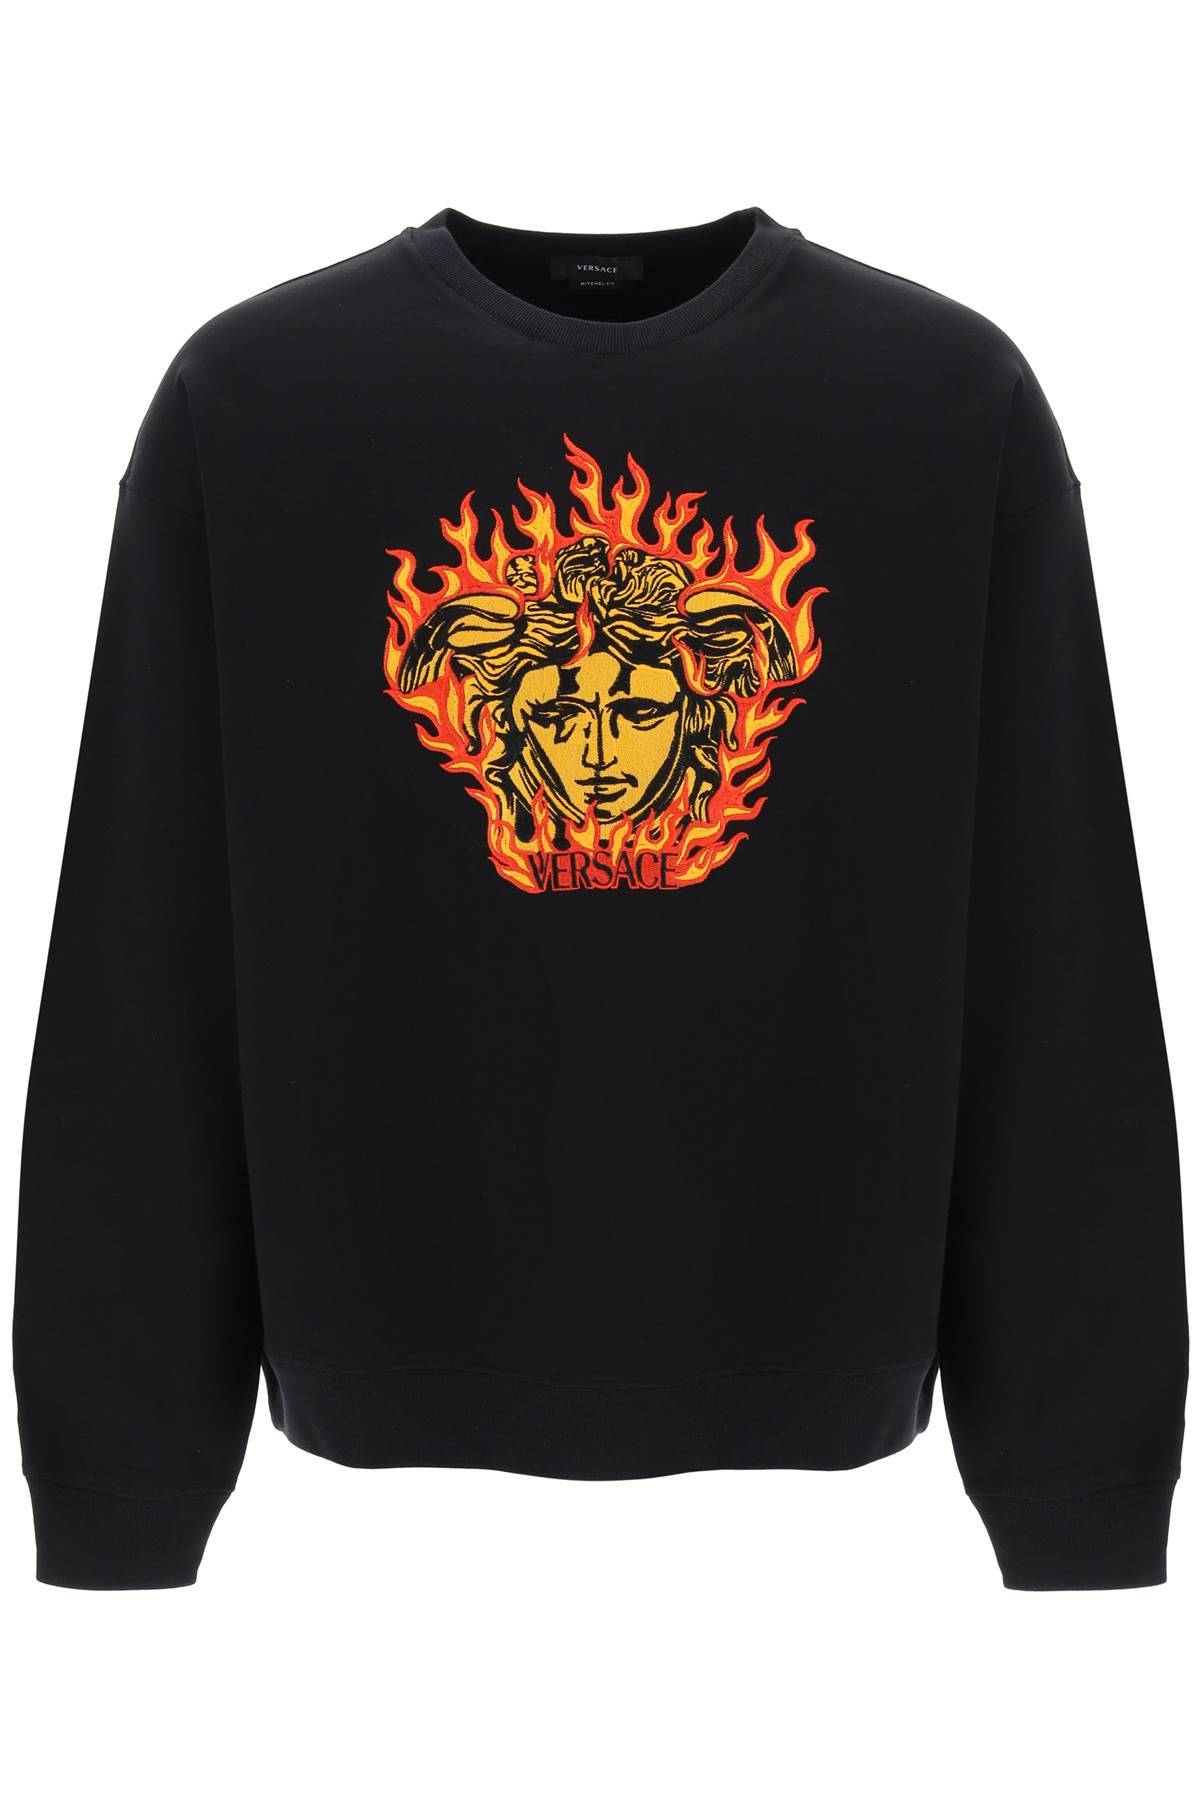 Versace VERSACE medusa flame sweatshirt